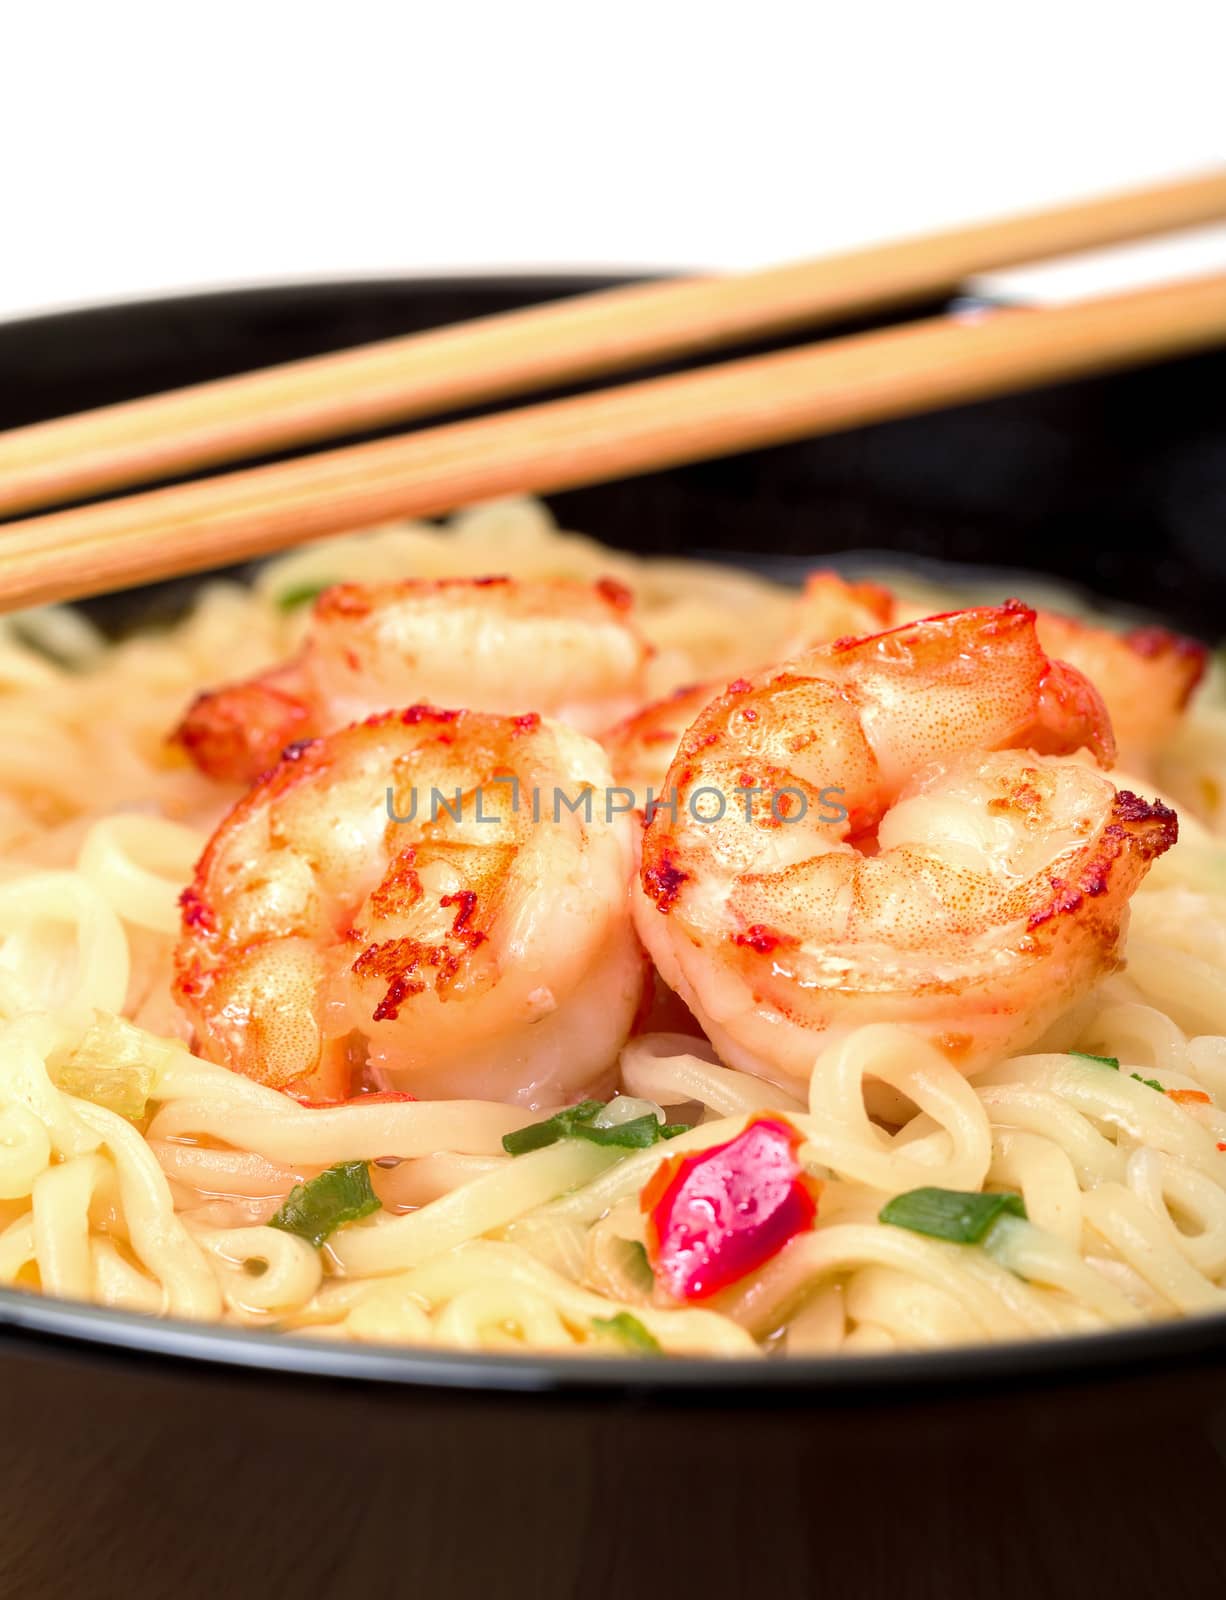 Shrimp and noodle soup bowl with chopsticks closeup